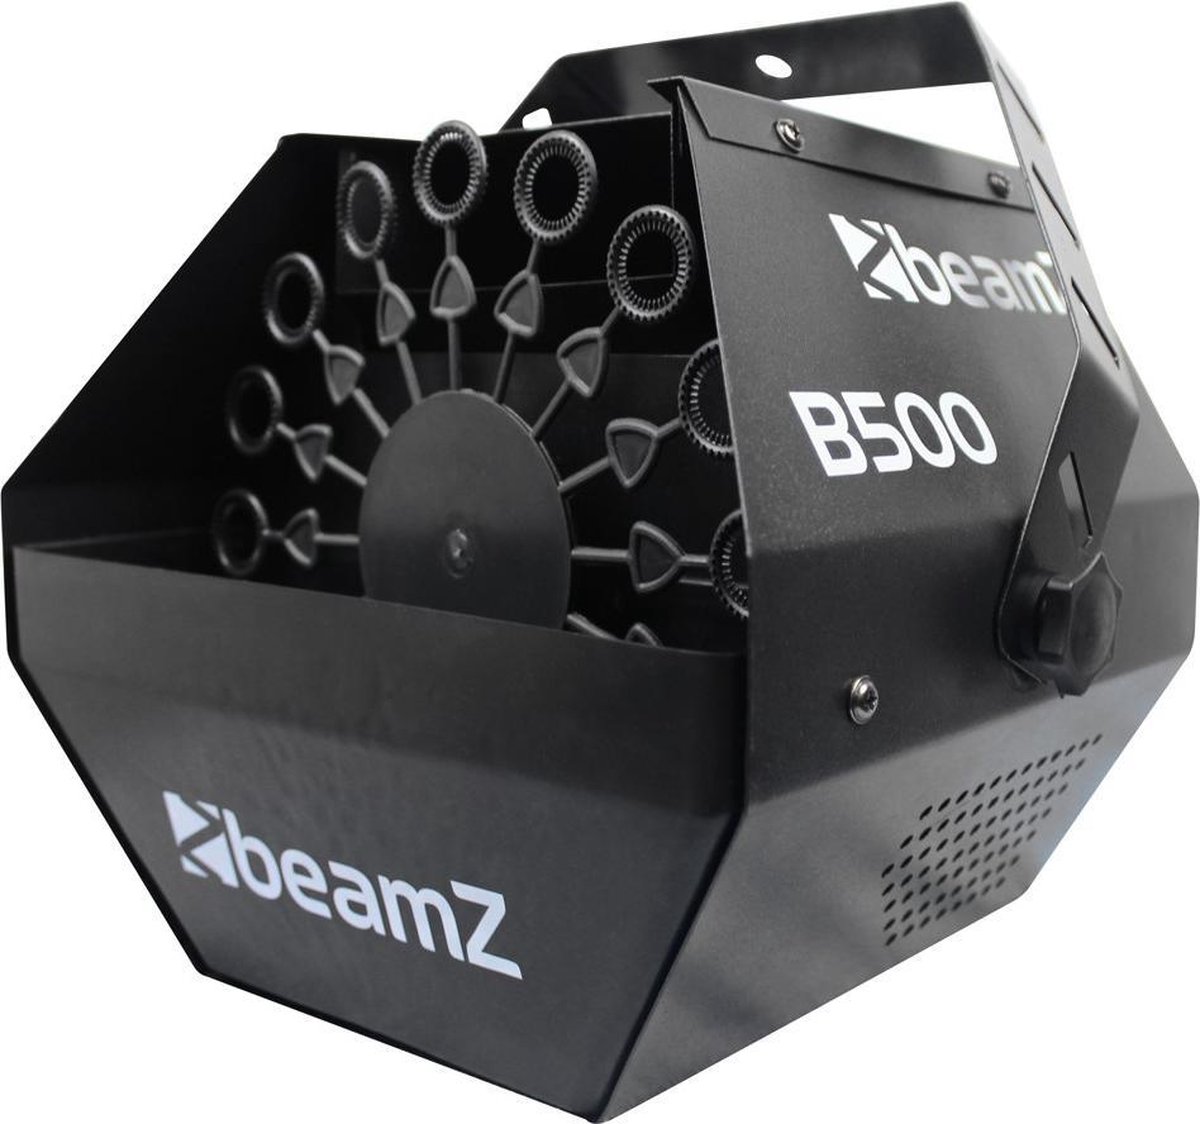 Bellenblaasmachine - BeamZ B500 compacte bellenblaas machine met ventilator - Hoge bellenproductie! - BeamZ